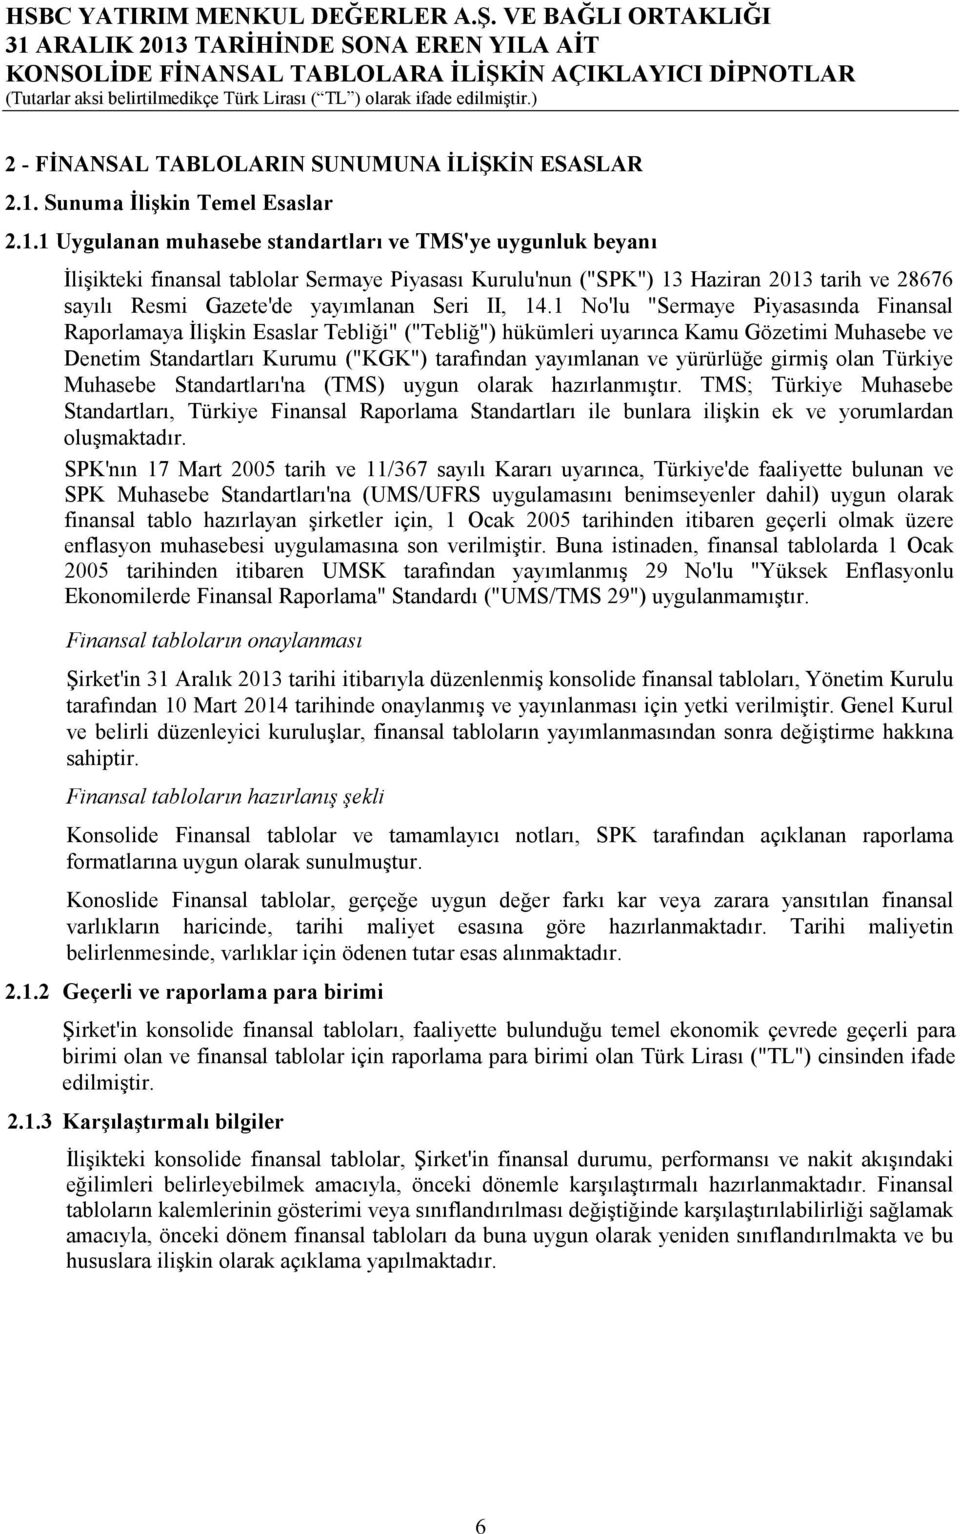 1 Uygulanan muhasebe standartları ve TMS'ye uygunluk beyanı İlişikteki finansal tablolar Sermaye Piyasası Kurulu'nun ("SPK") 13 Haziran 2013 tarih ve 28676 sayılı Resmi Gazete'de yayımlanan Seri II,